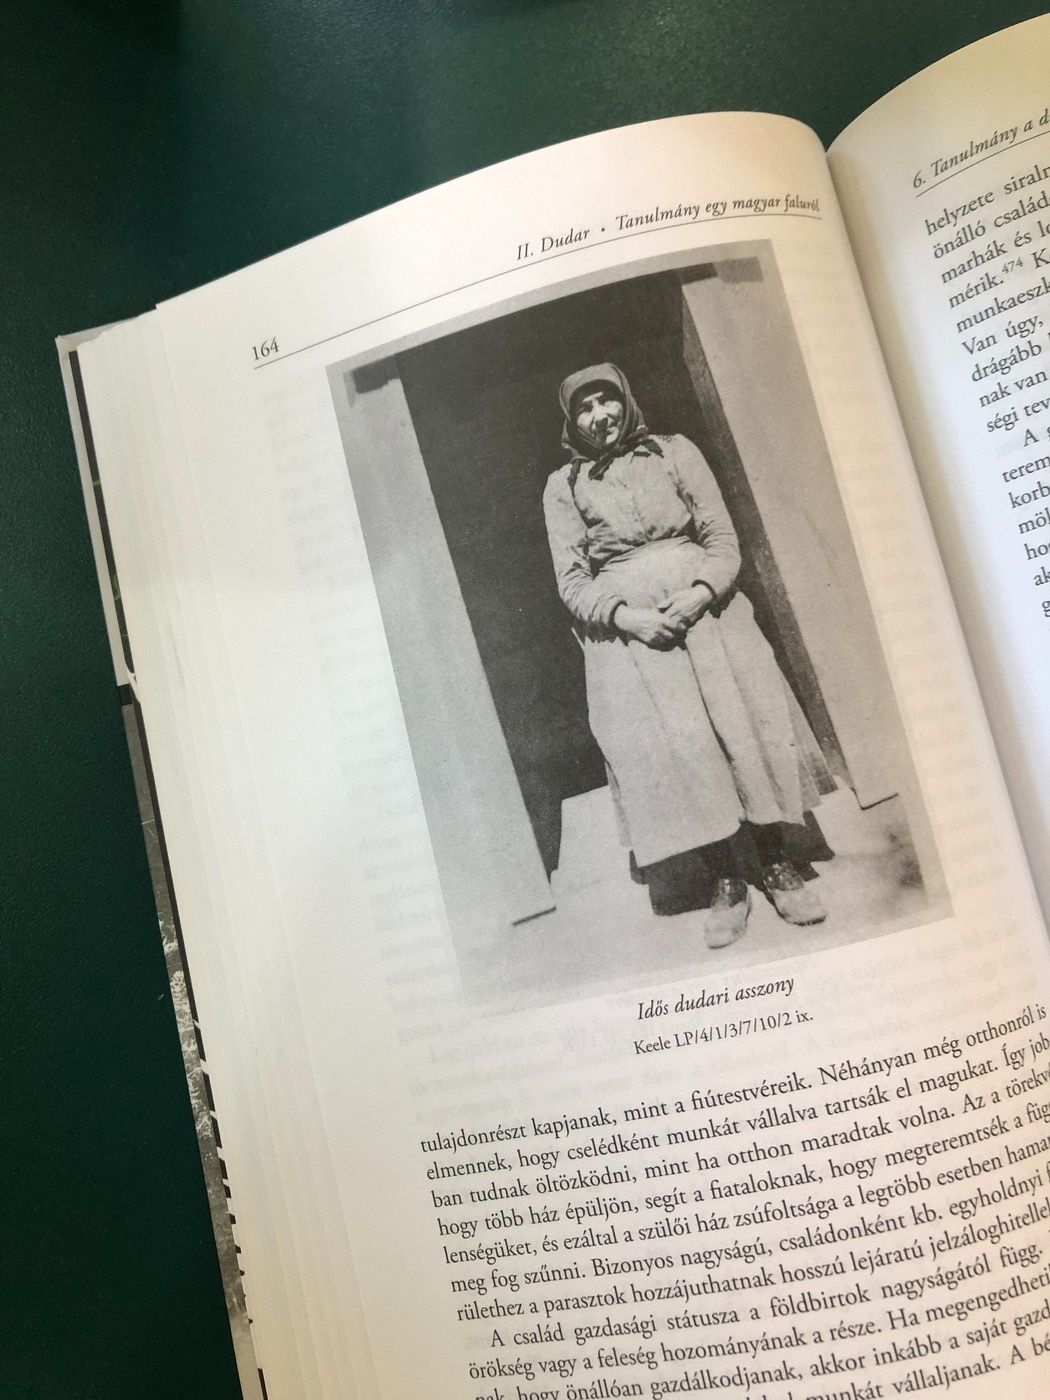 Kép a könyvből, rajta egy idős asszony régi viseletben